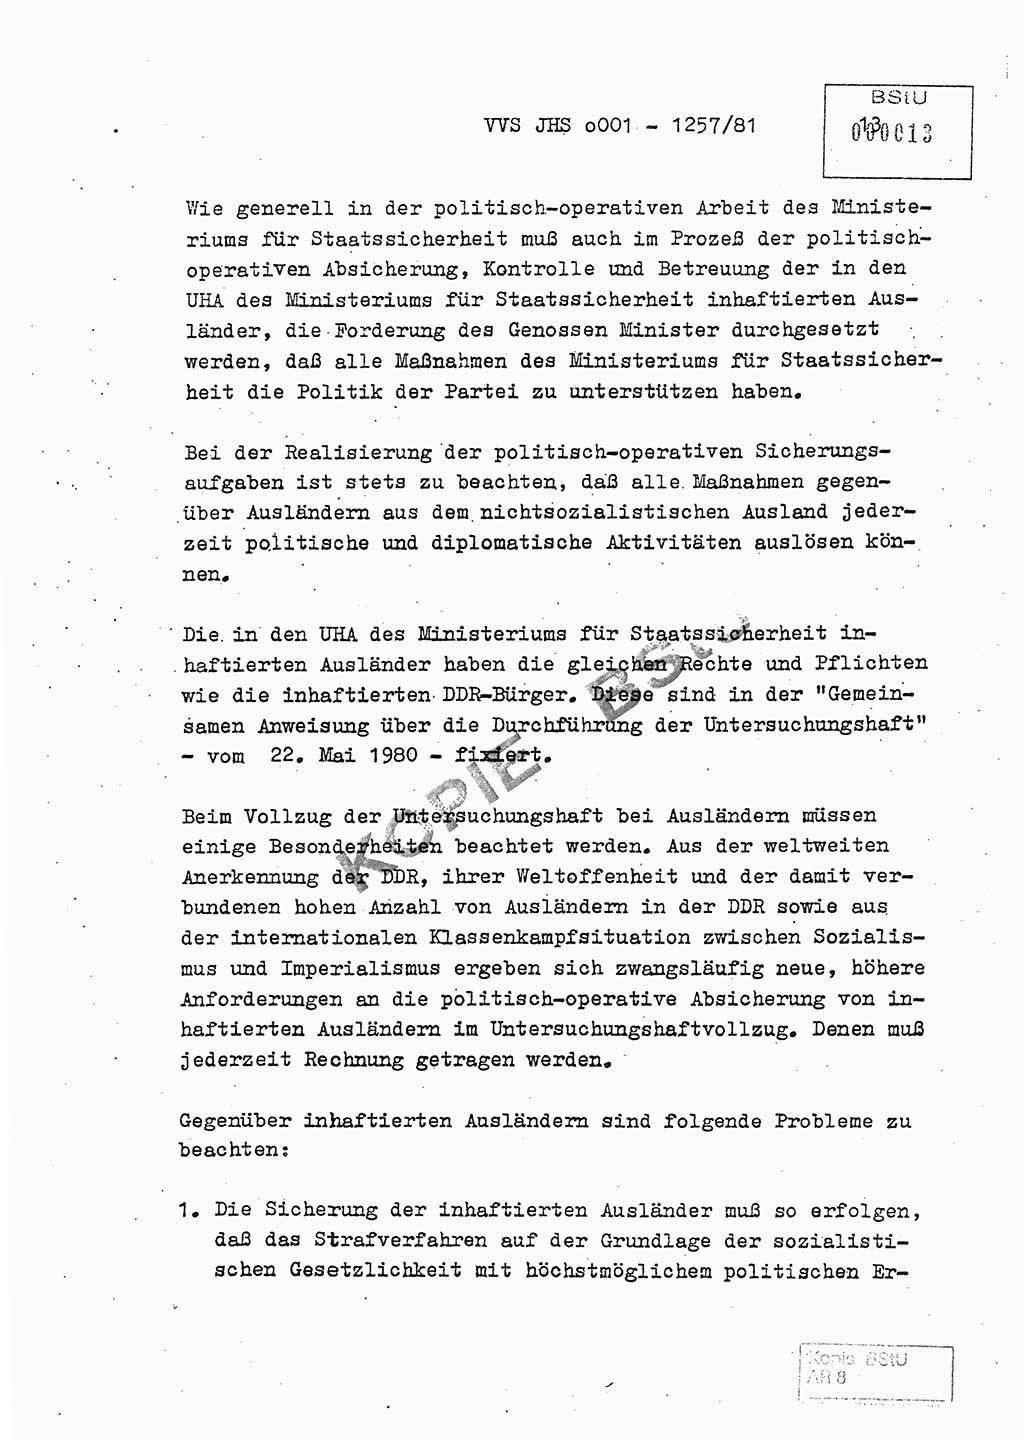 Fachschulabschlußarbeit Unterleutnant Dieter Möller (BV Rst. Abt. ⅩⅣ), Ministerium für Staatssicherheit (MfS) [Deutsche Demokratische Republik (DDR)], Juristische Hochschule (JHS), Vertrauliche Verschlußsache (VVS) o001-1257/81, Potsdam 1982, Seite 13 (FS-Abschl.-Arb. MfS DDR JHS VVS o001-1257/81 1982, S. 13)